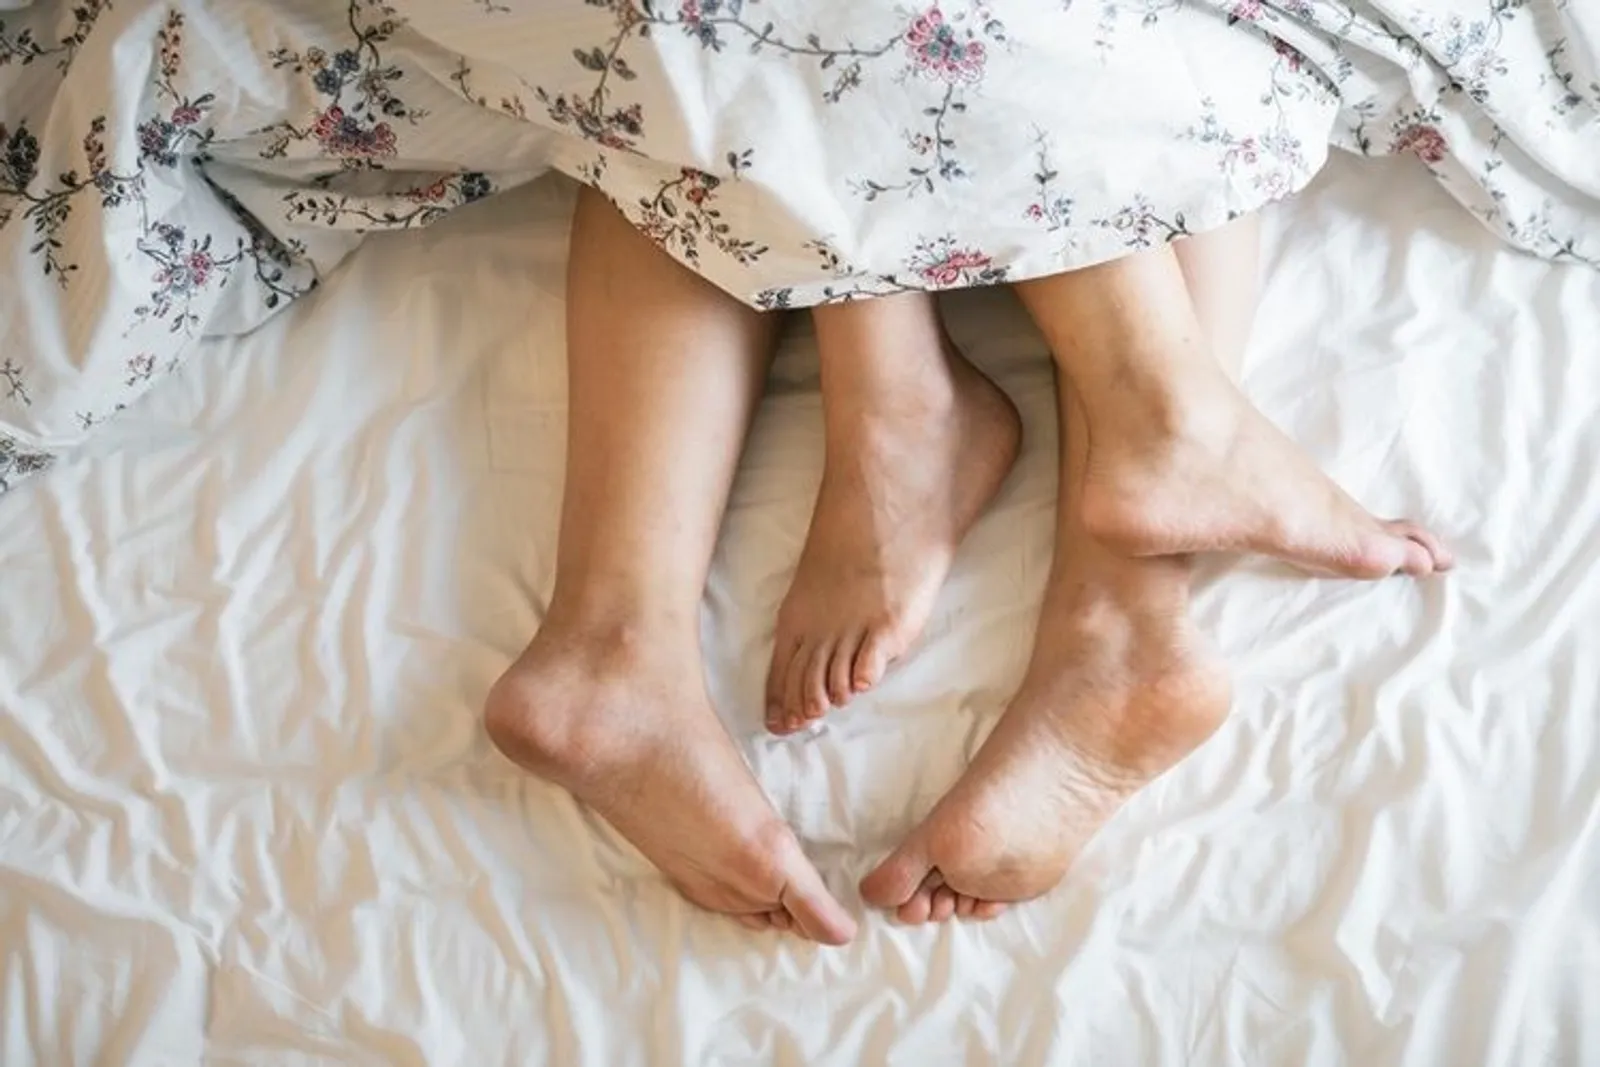 5 Hal yang Sering Membuat Laki-Laki Merasa Insecure di Depan Istri